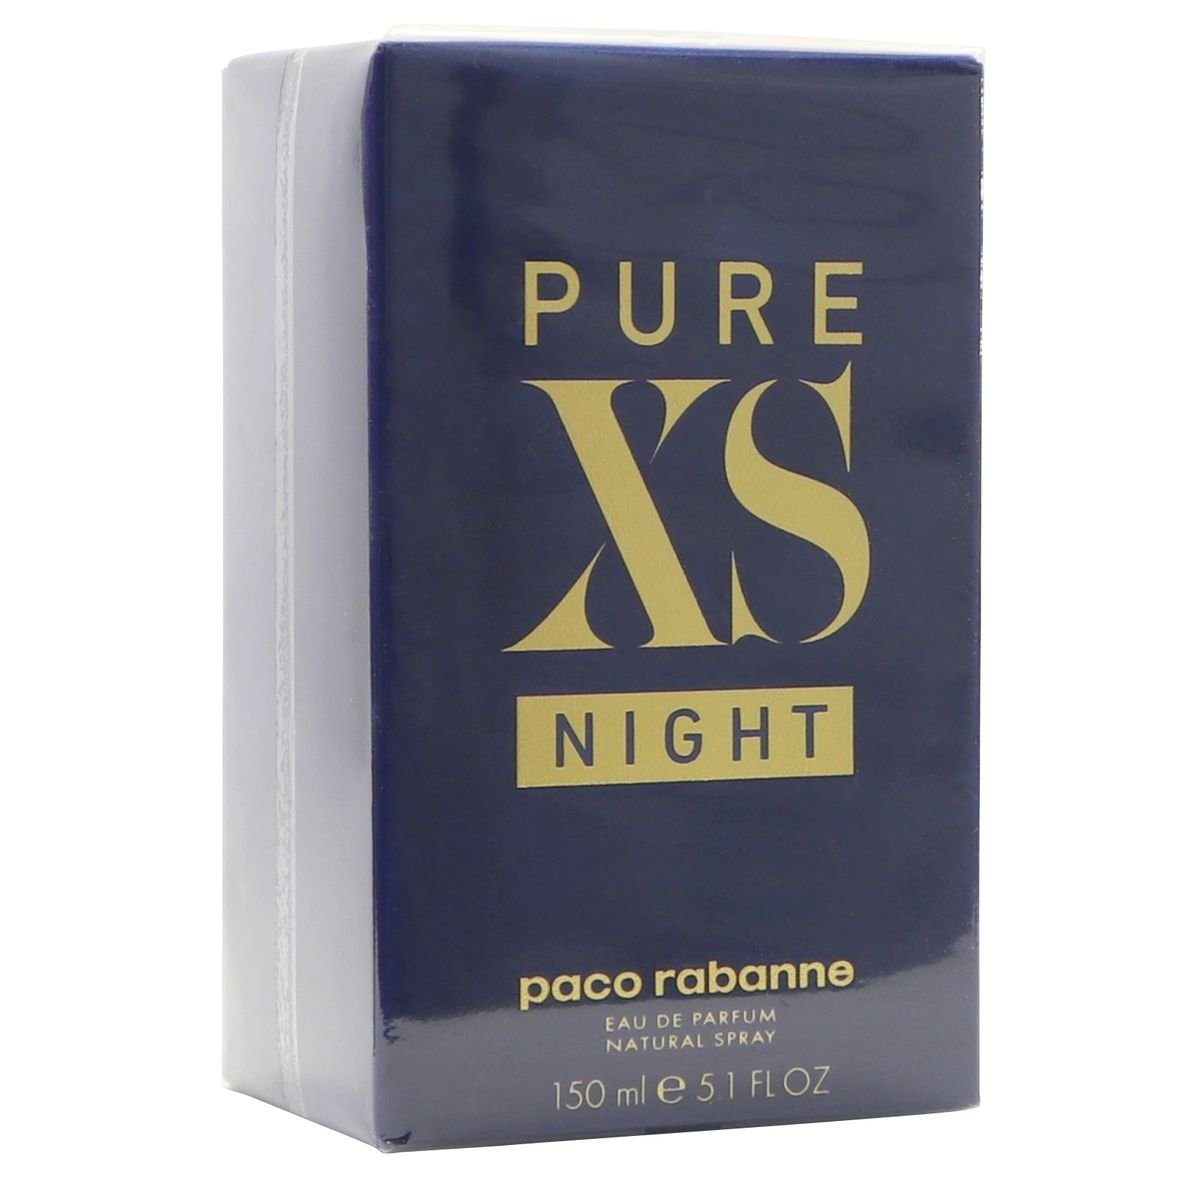 Rabanne Parfum Lui de Parfum rabanne Eau paco Spray ml 150 Night Eau Pour XS Paco Pure de